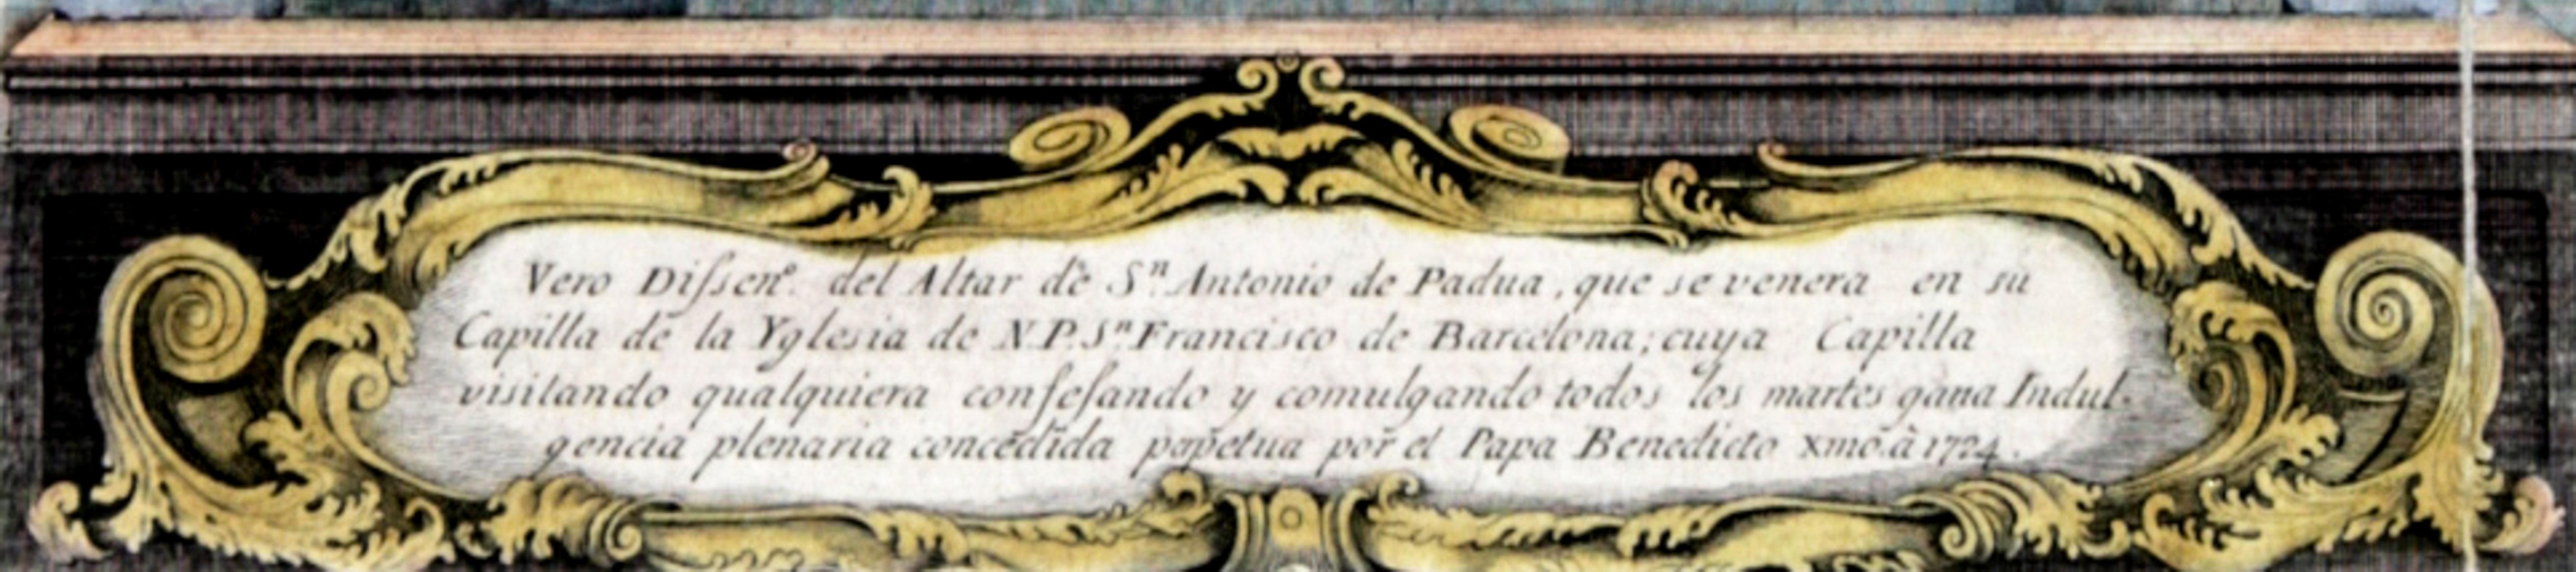 Gravure colorée à la main de l'autel de Saint-Antonio de Padoue, 1724 - Print de Unknown